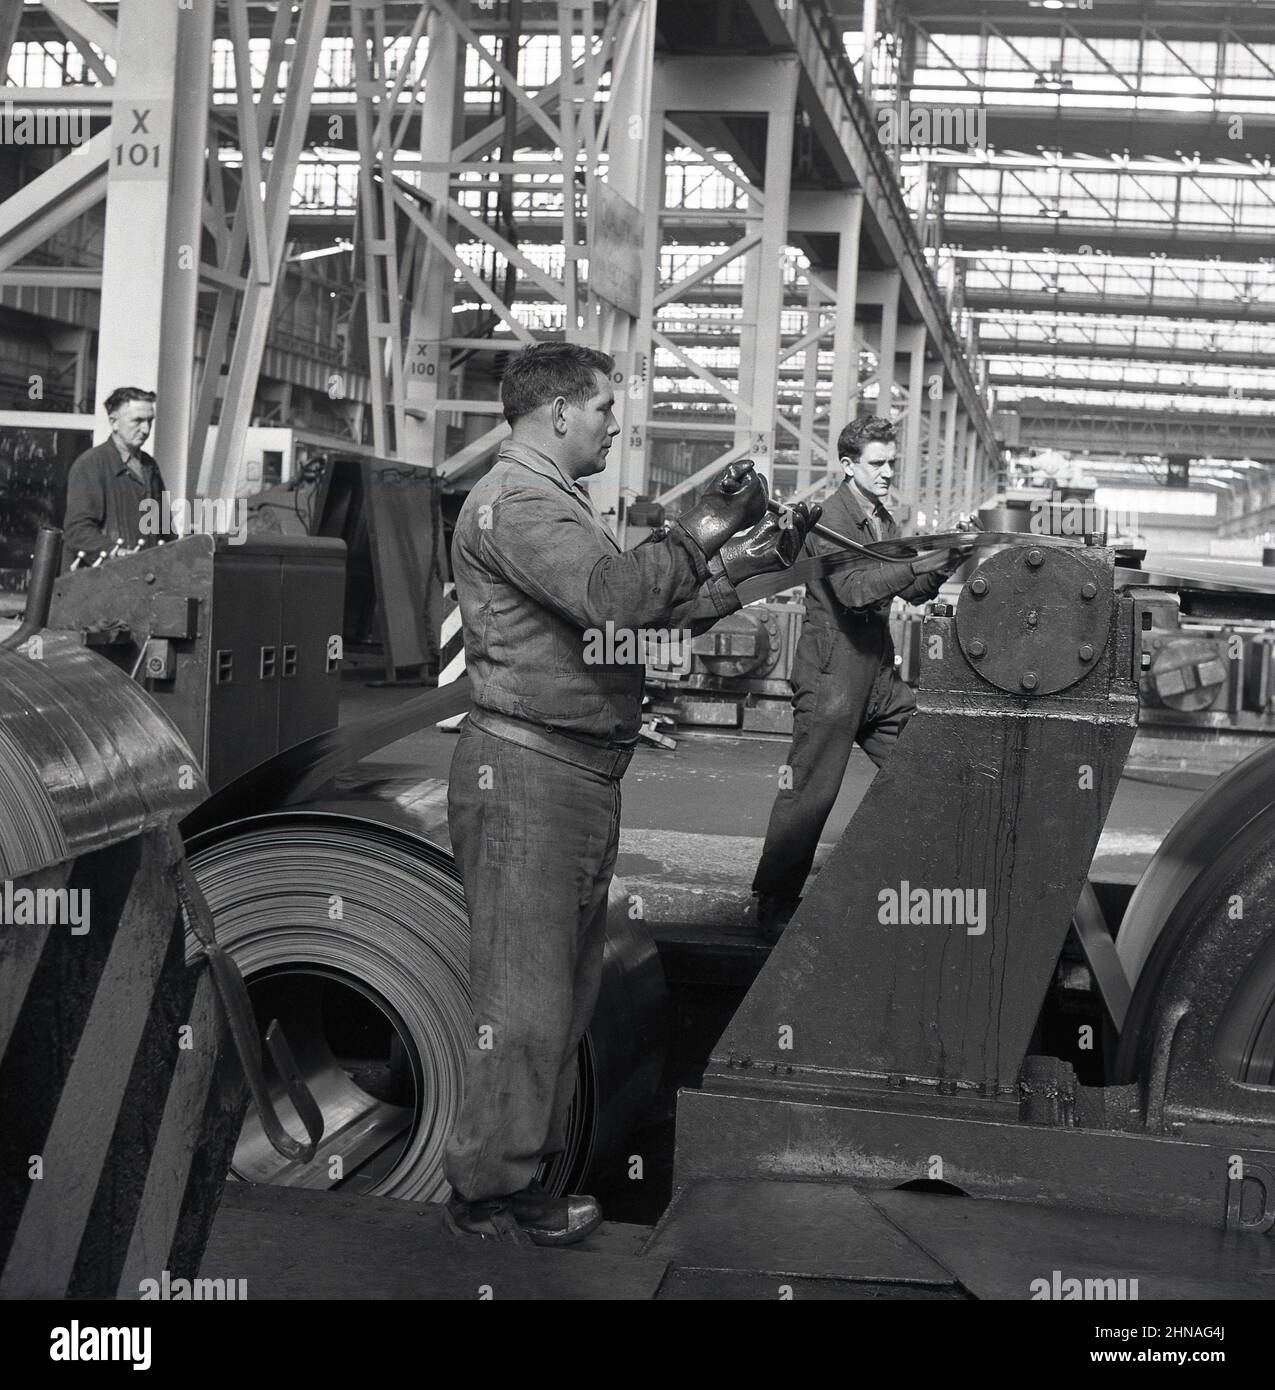 1950s, historique, travailleurs sur un plancher industriel usine de pressage de tôles d'acier laminées, Port Talbot, pays de Galles, Royaume-Uni. Banque D'Images